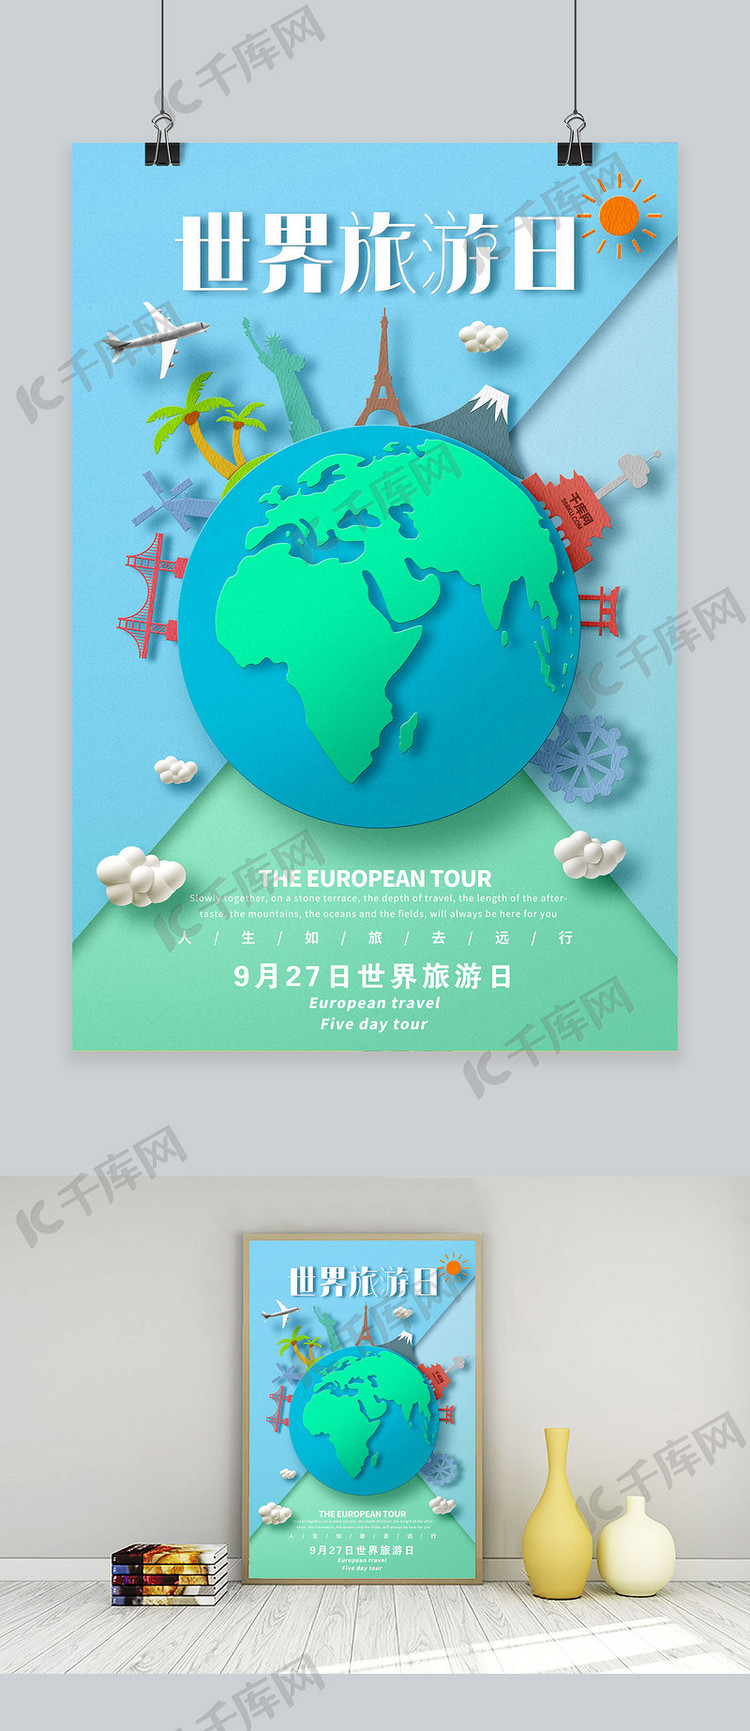 创意世界旅游日海报